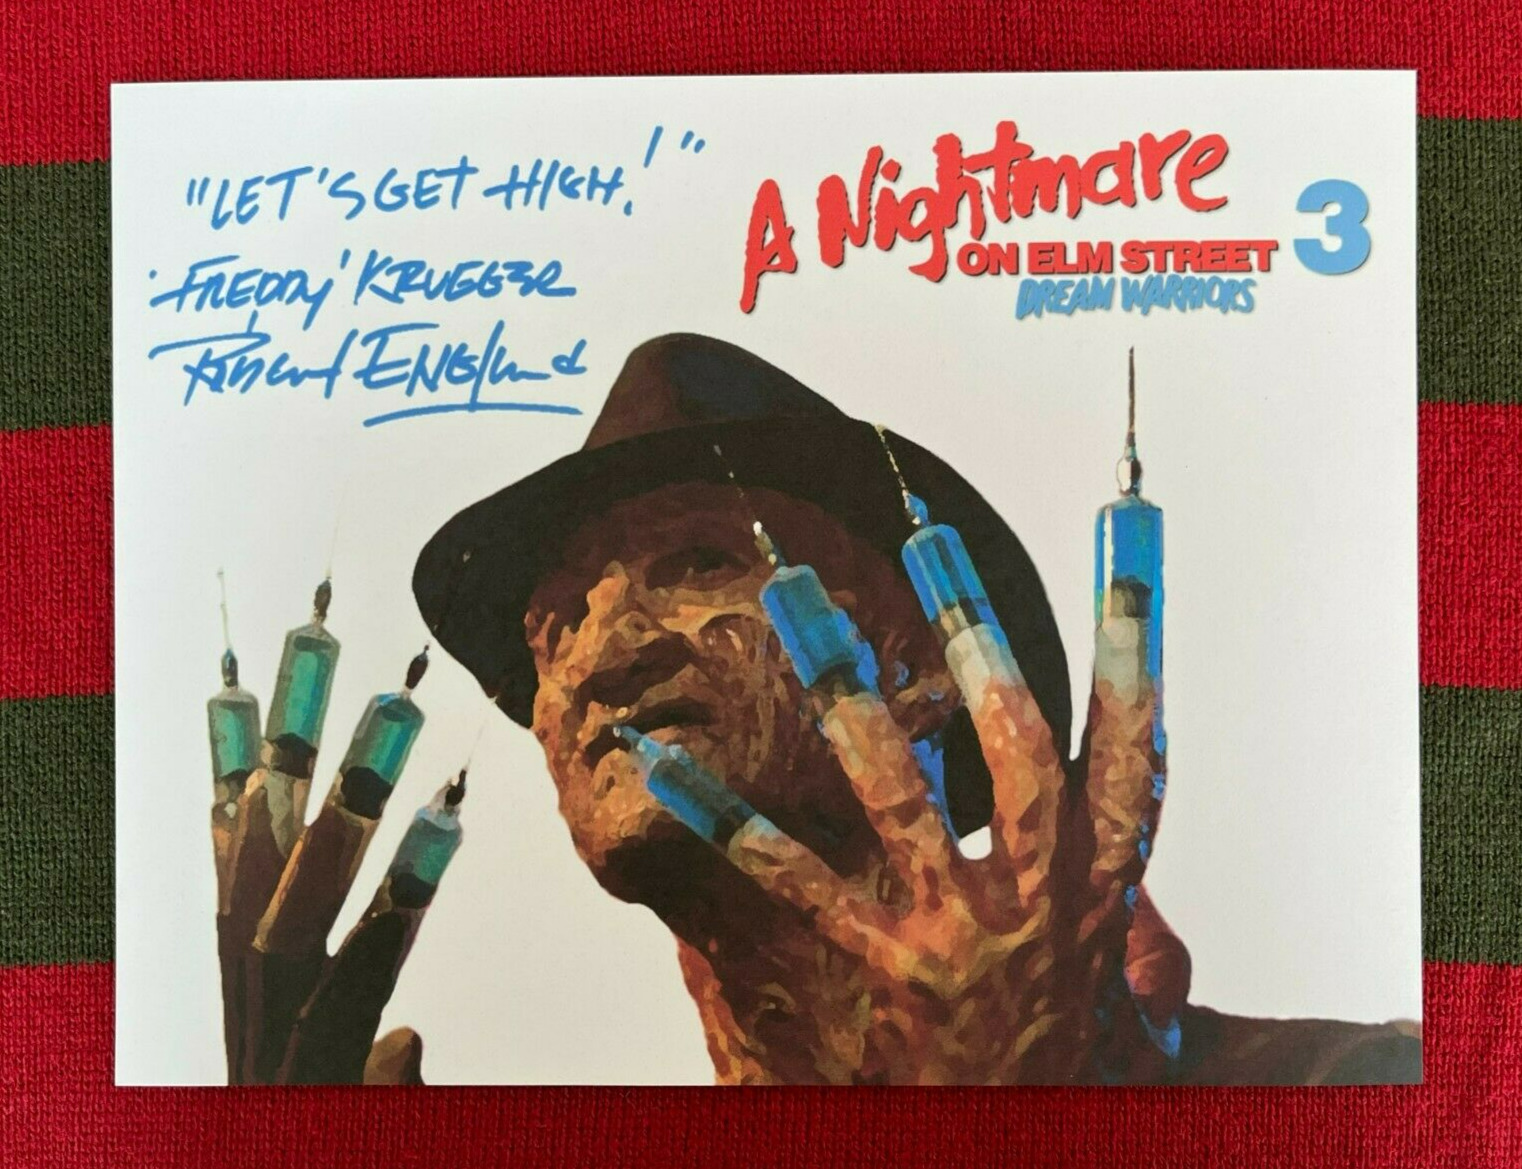 A Nightmare On Elm Street 3 